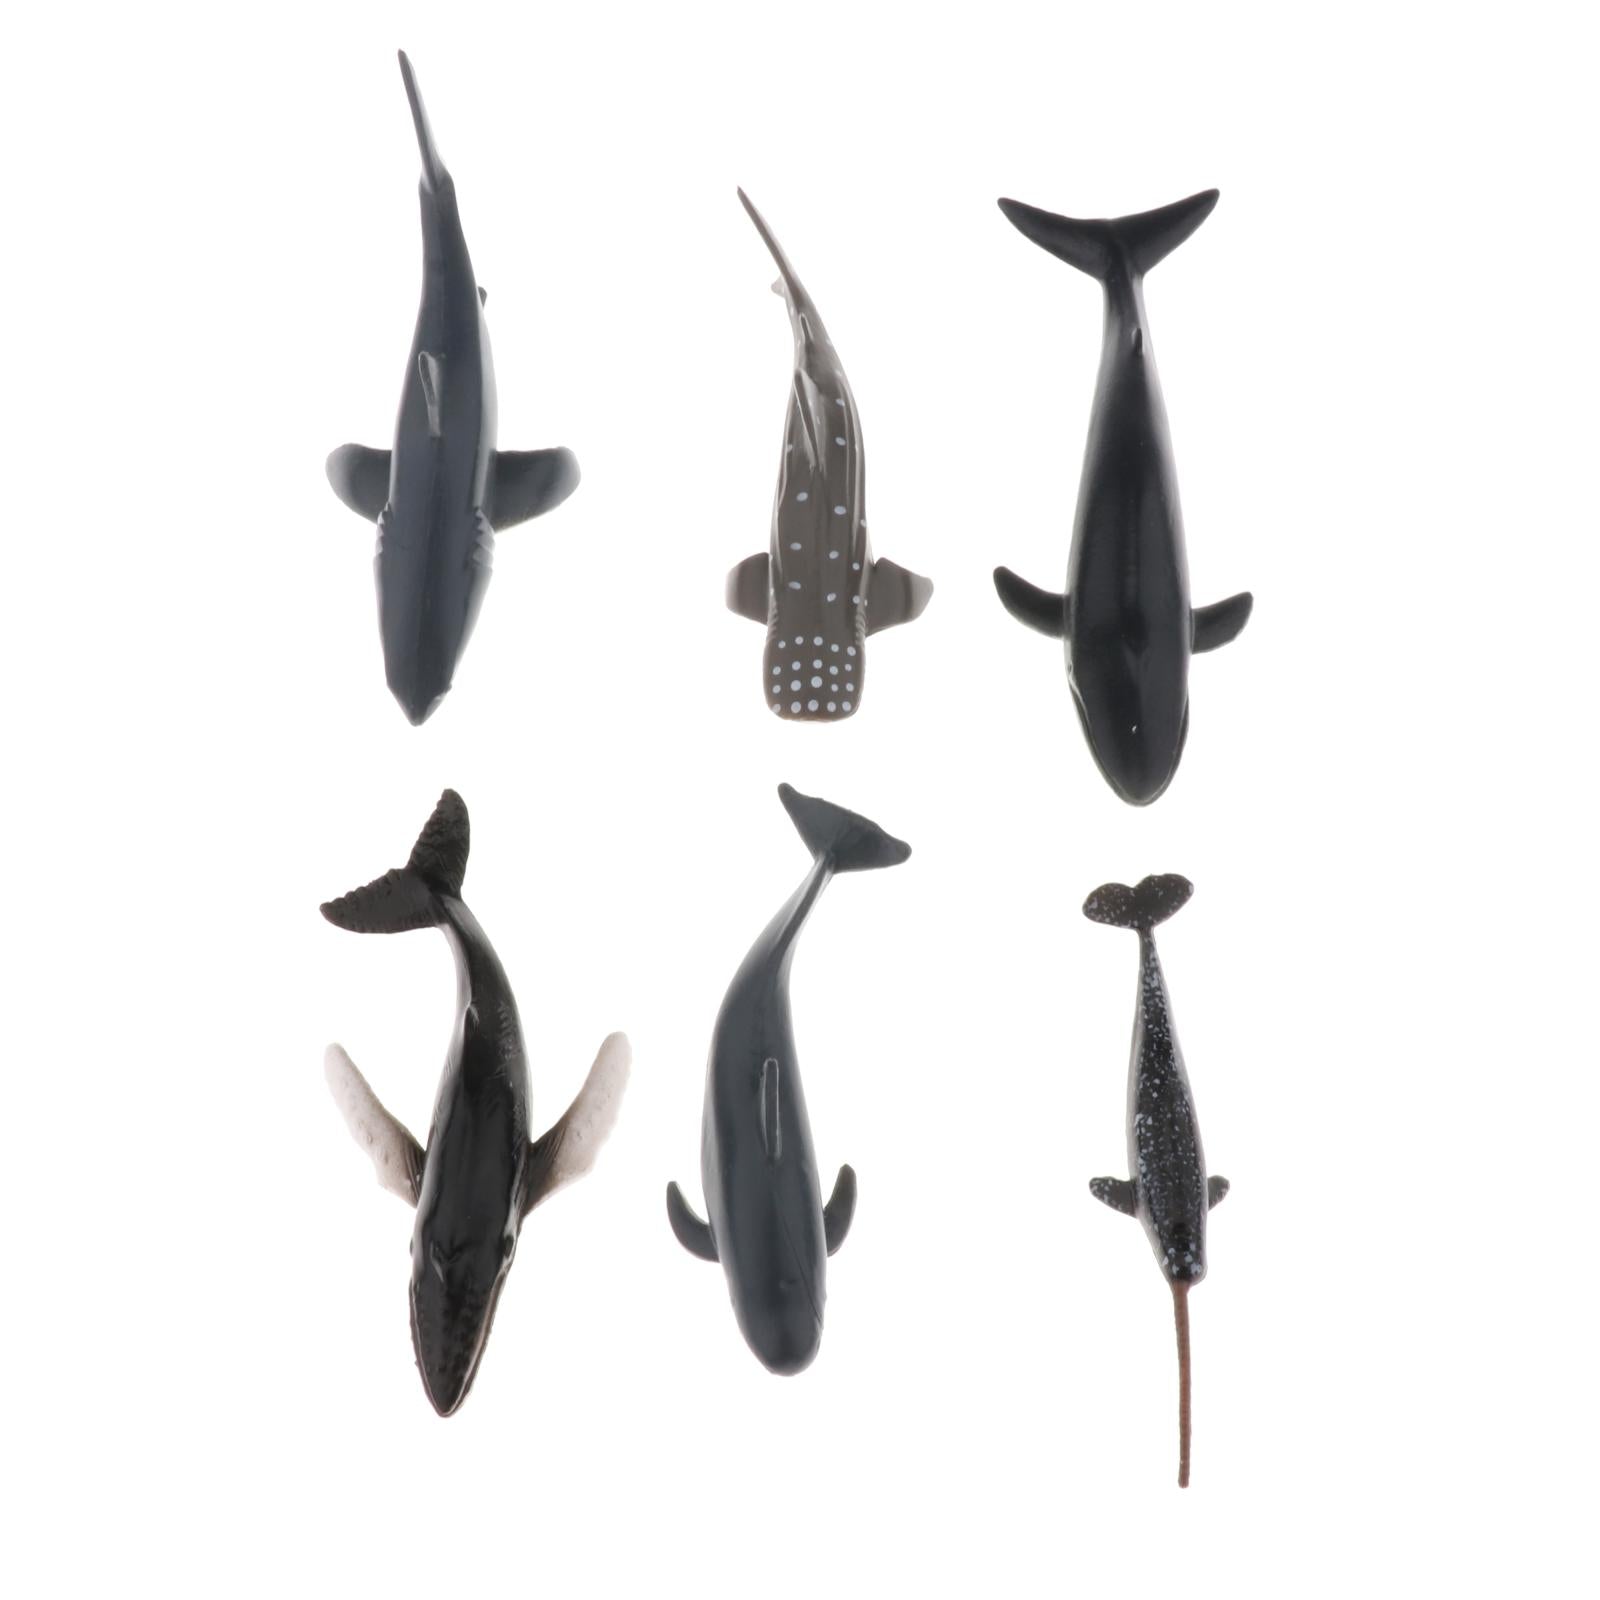 Solid Plastic Lifelike Sea Creature Figures Mini Whale Figurines Models Bulk